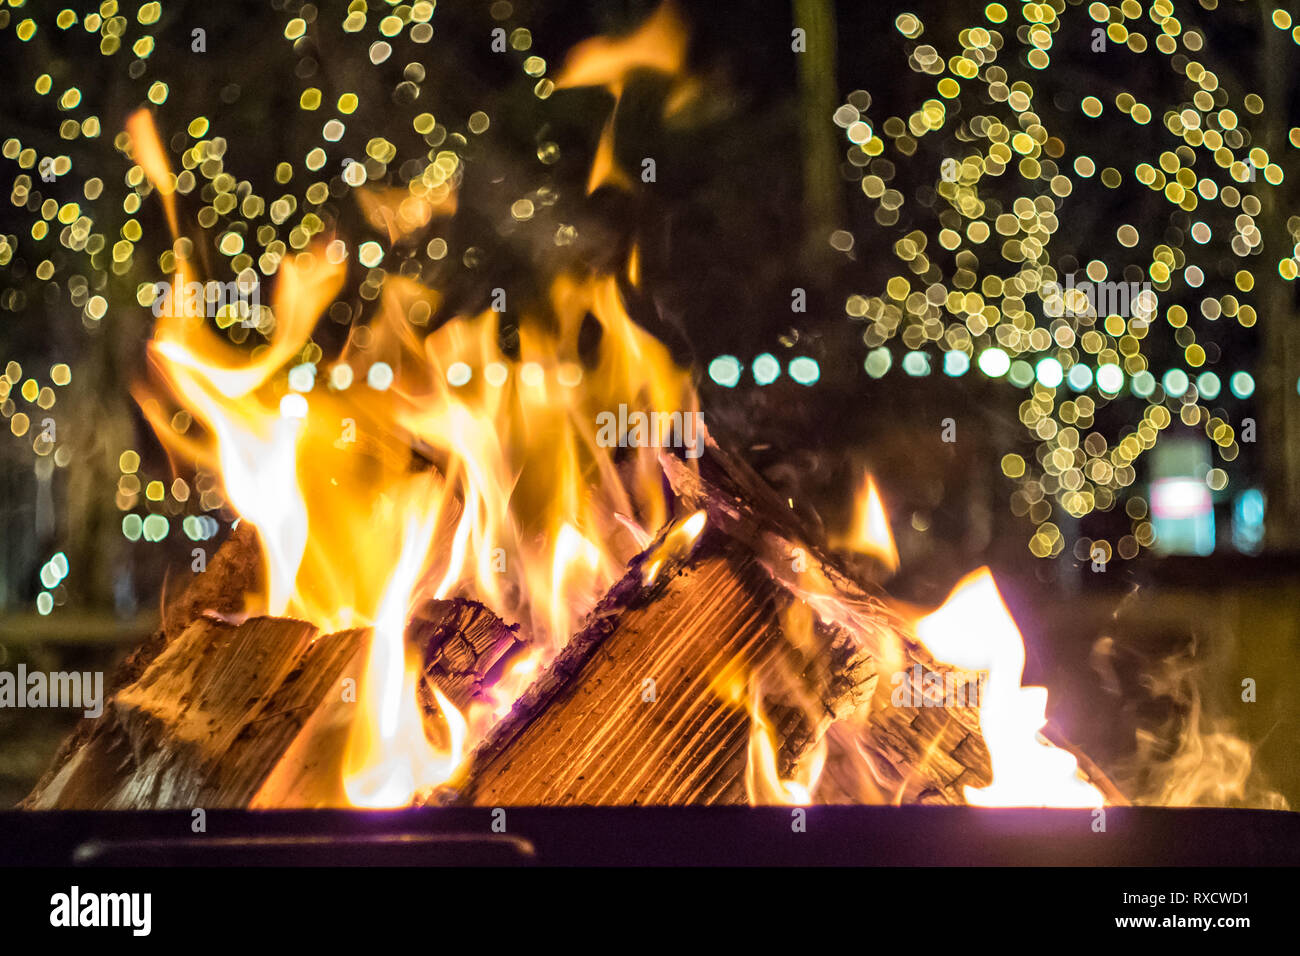 Impressionen vom Weihnachtsmarkt in Pfaffenhofen - brennendes Holz, Feuerstelle zum Aufwärmen Stockfoto